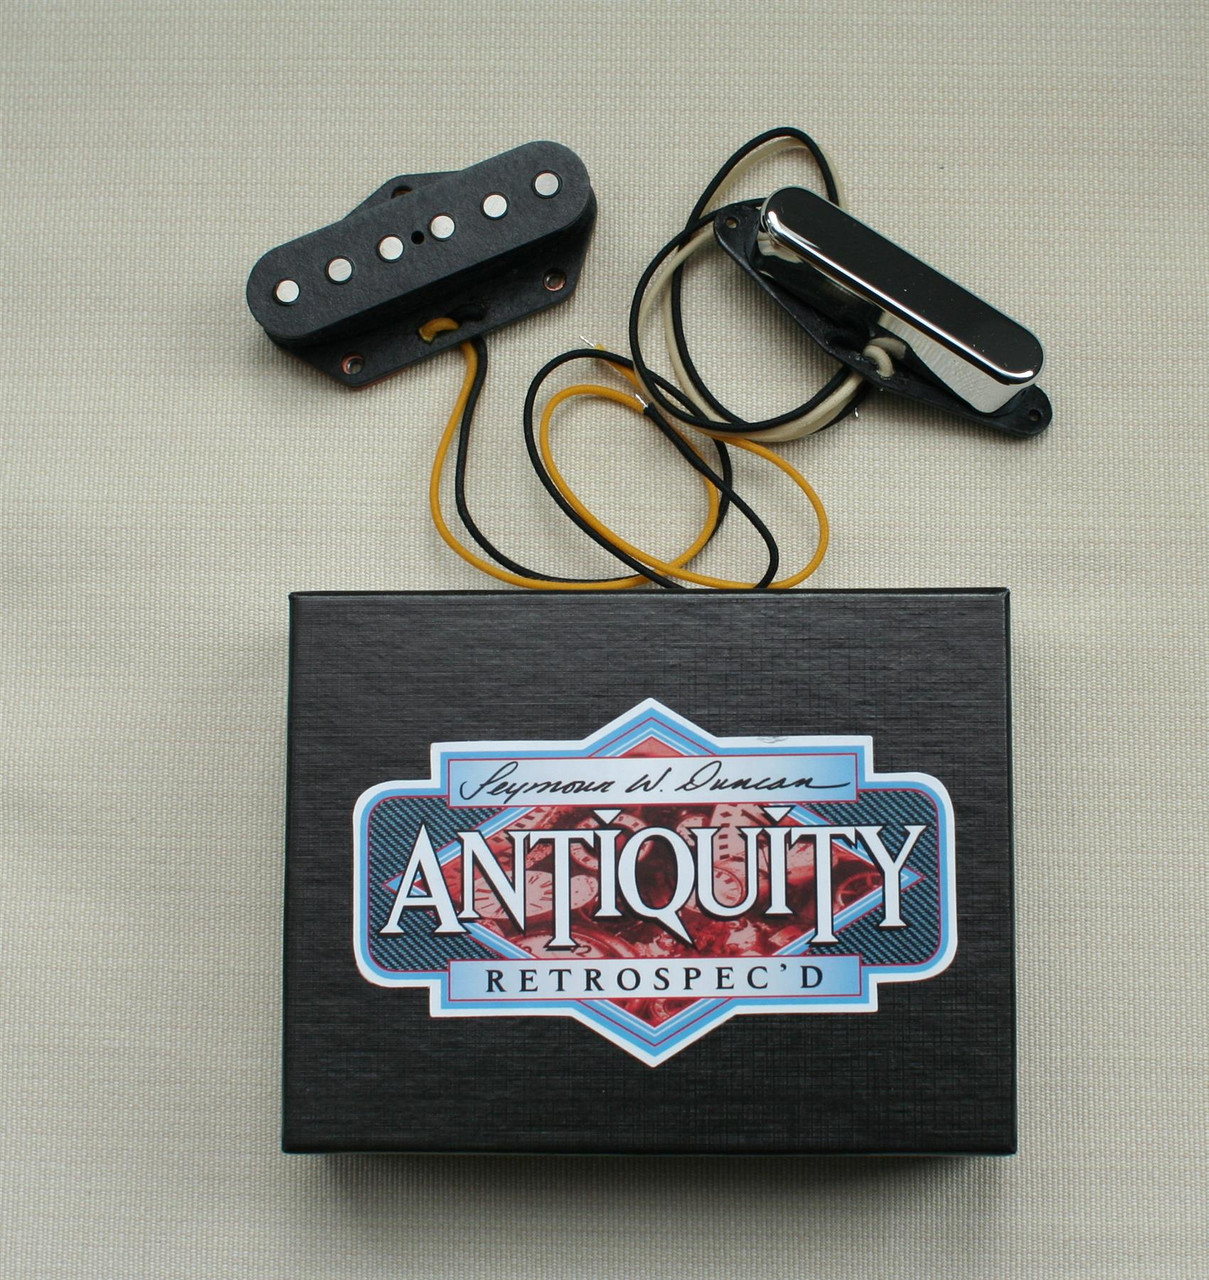 Seymour Duncan Antiquity Retrospec'd Tele Pickup set